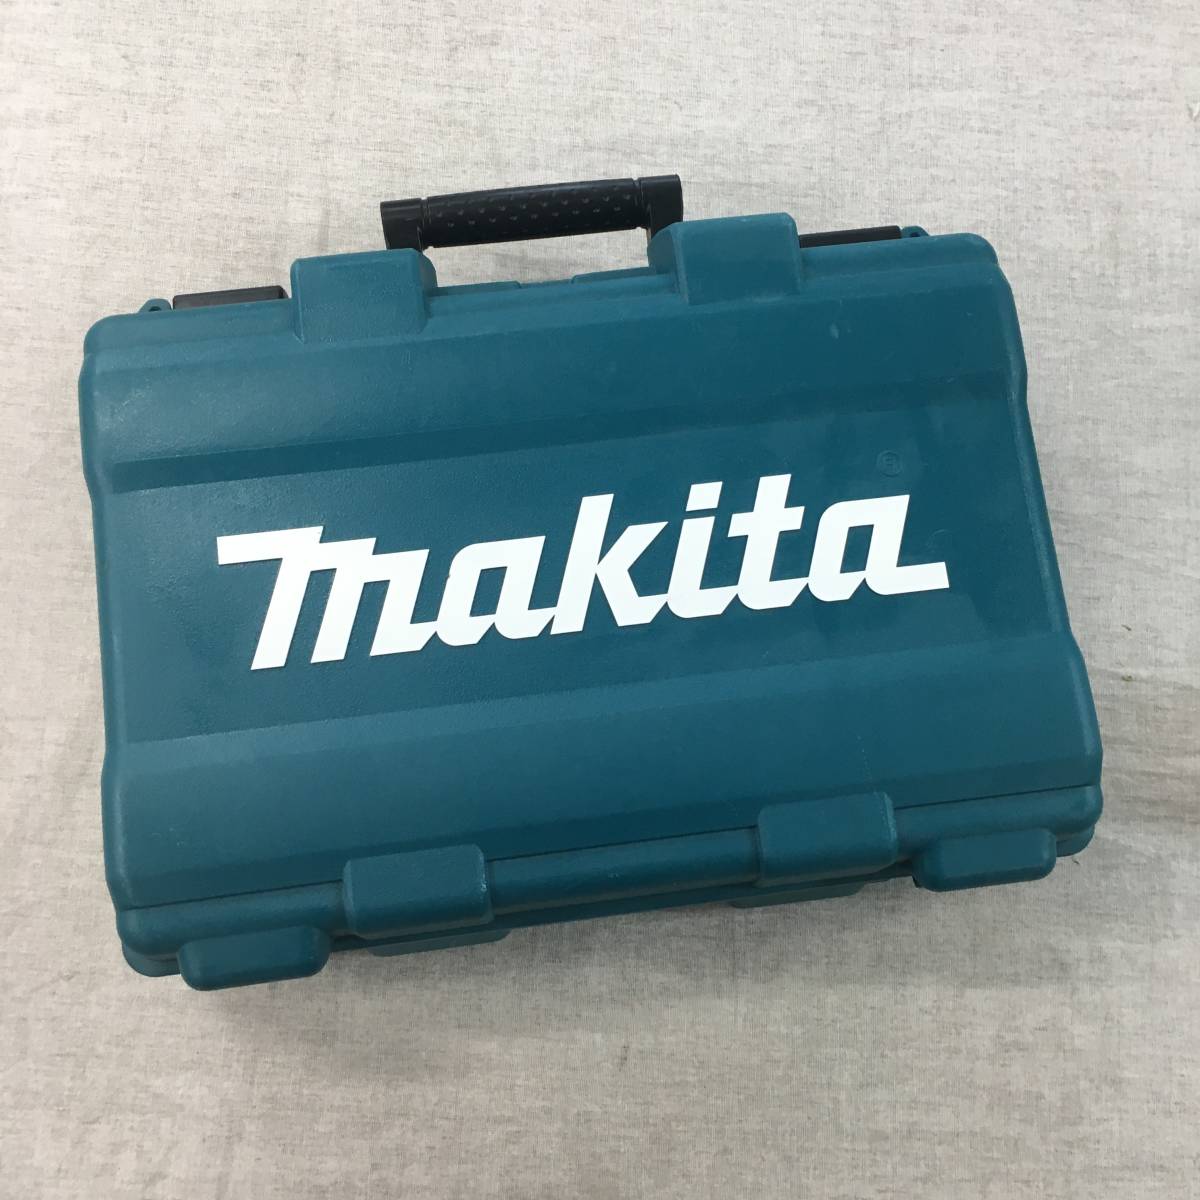 現状品 マキタ(Makita) 充電式タッカ ST113DSH_画像1